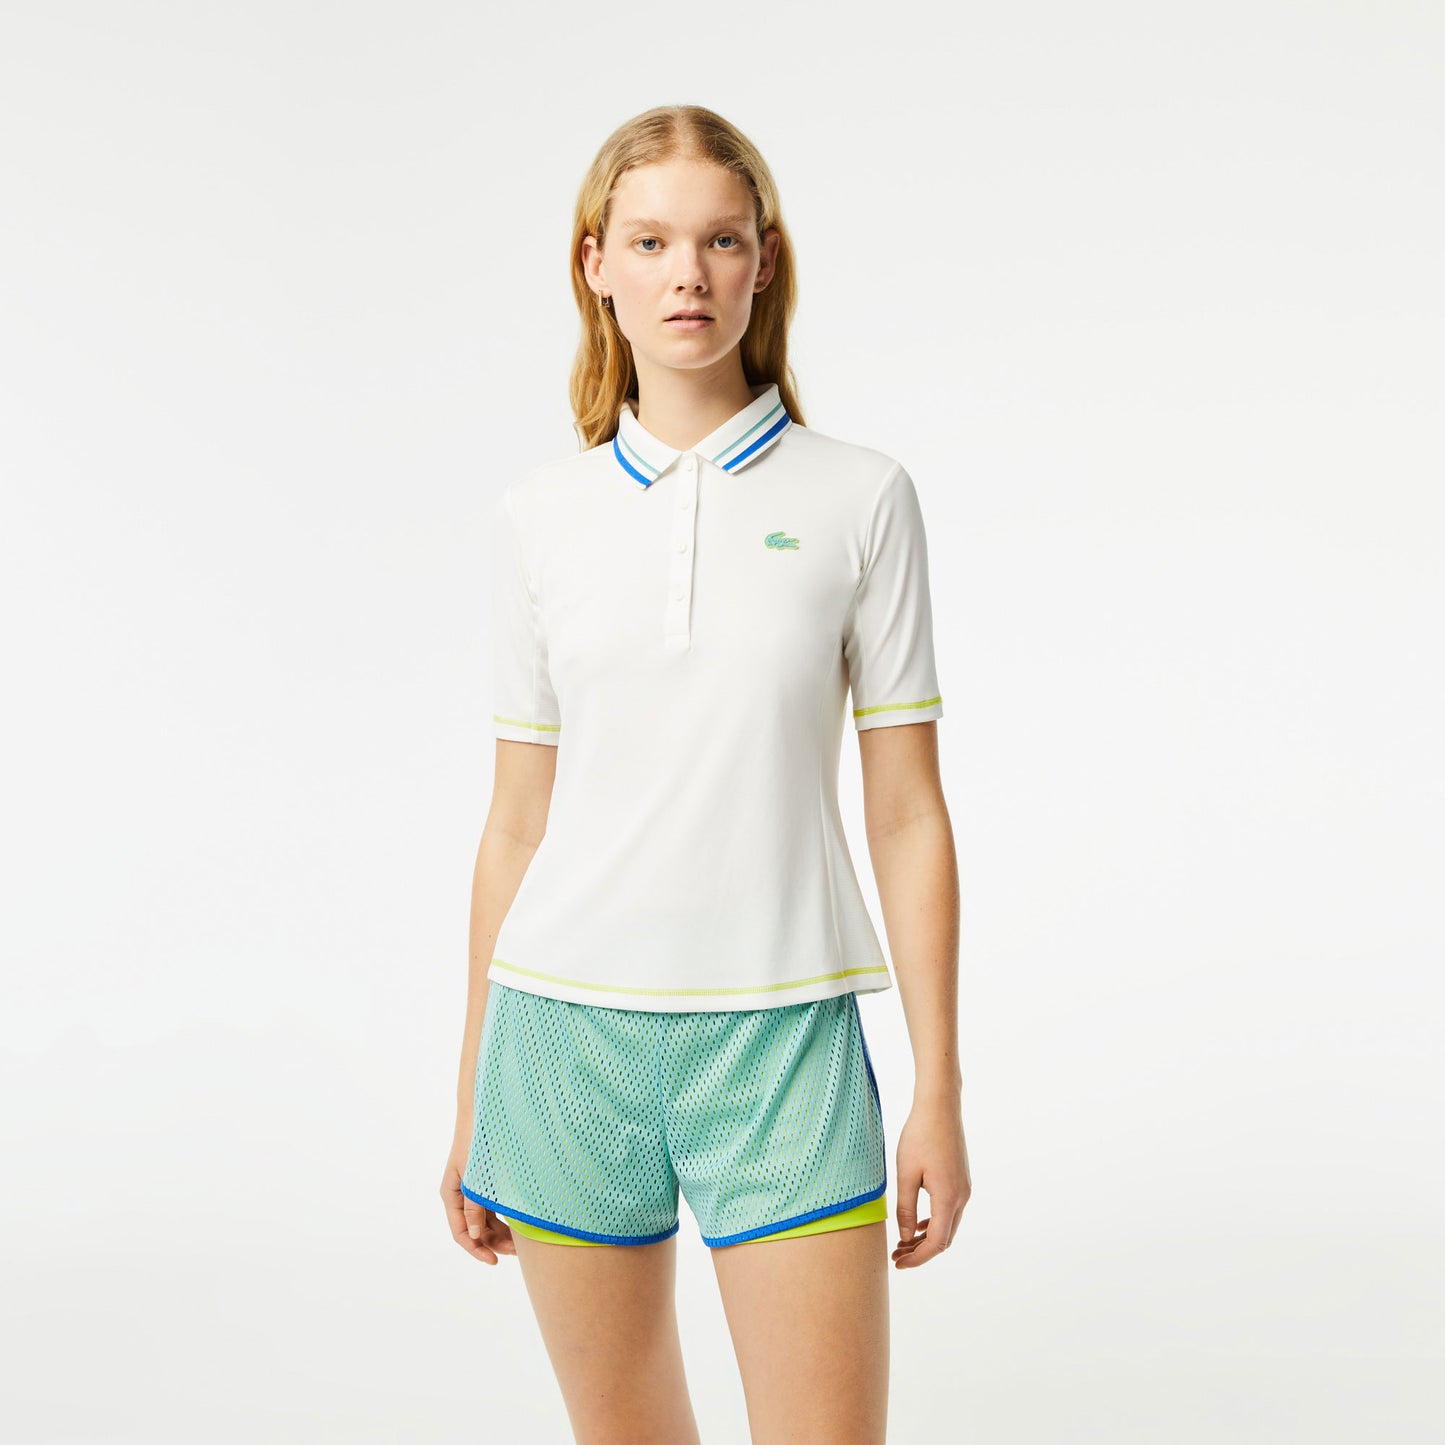 Lacoste Women's Tennis Polo White (1)